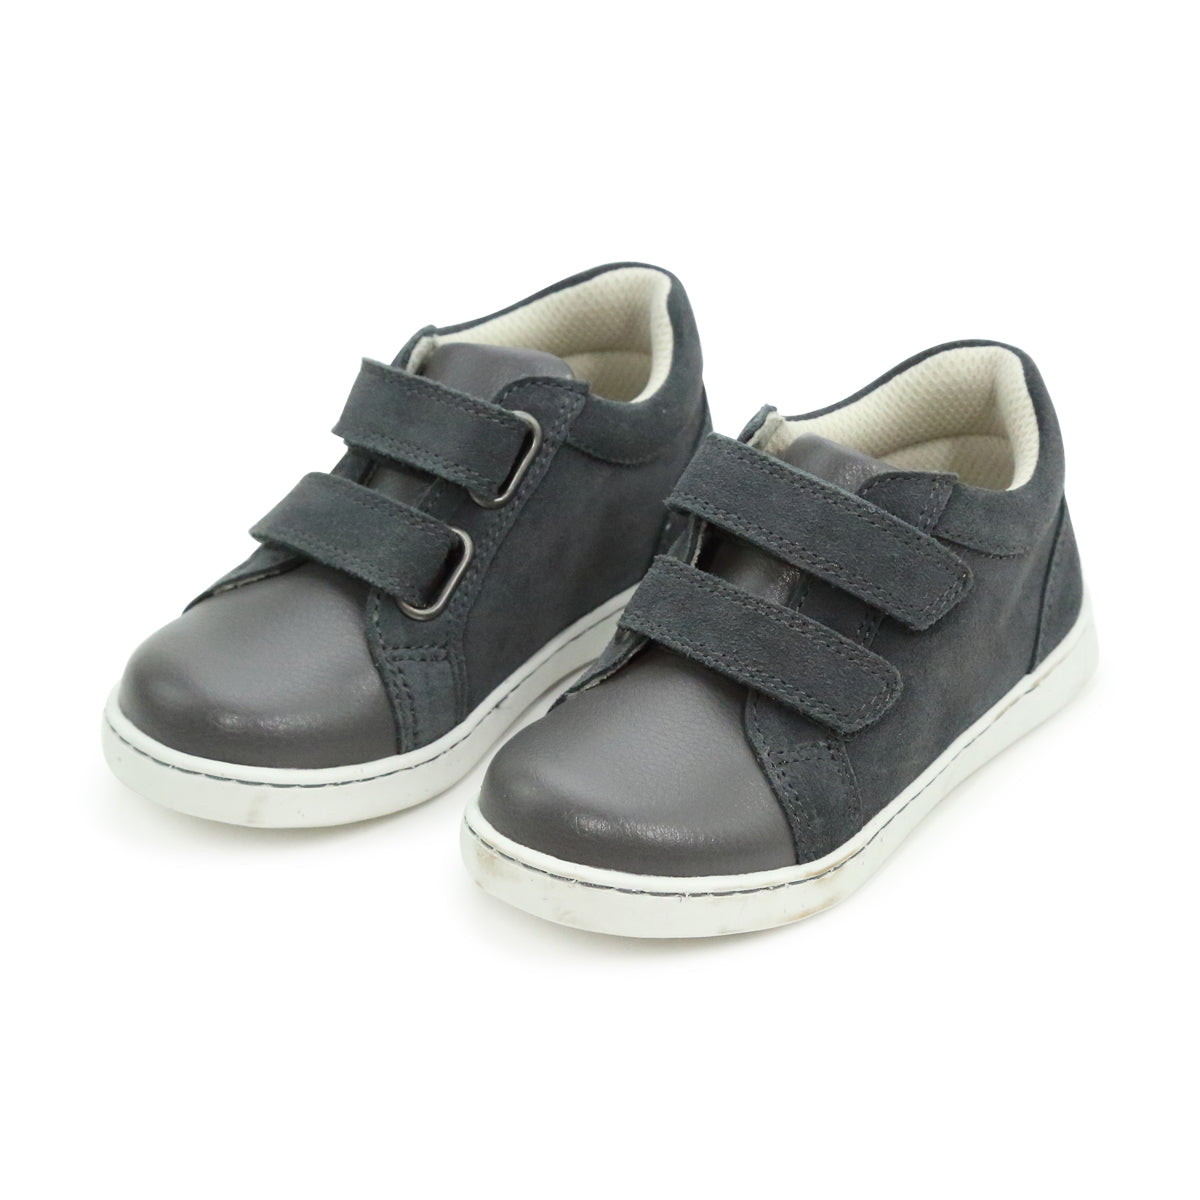 LORENS' men's velcro shoes - Black